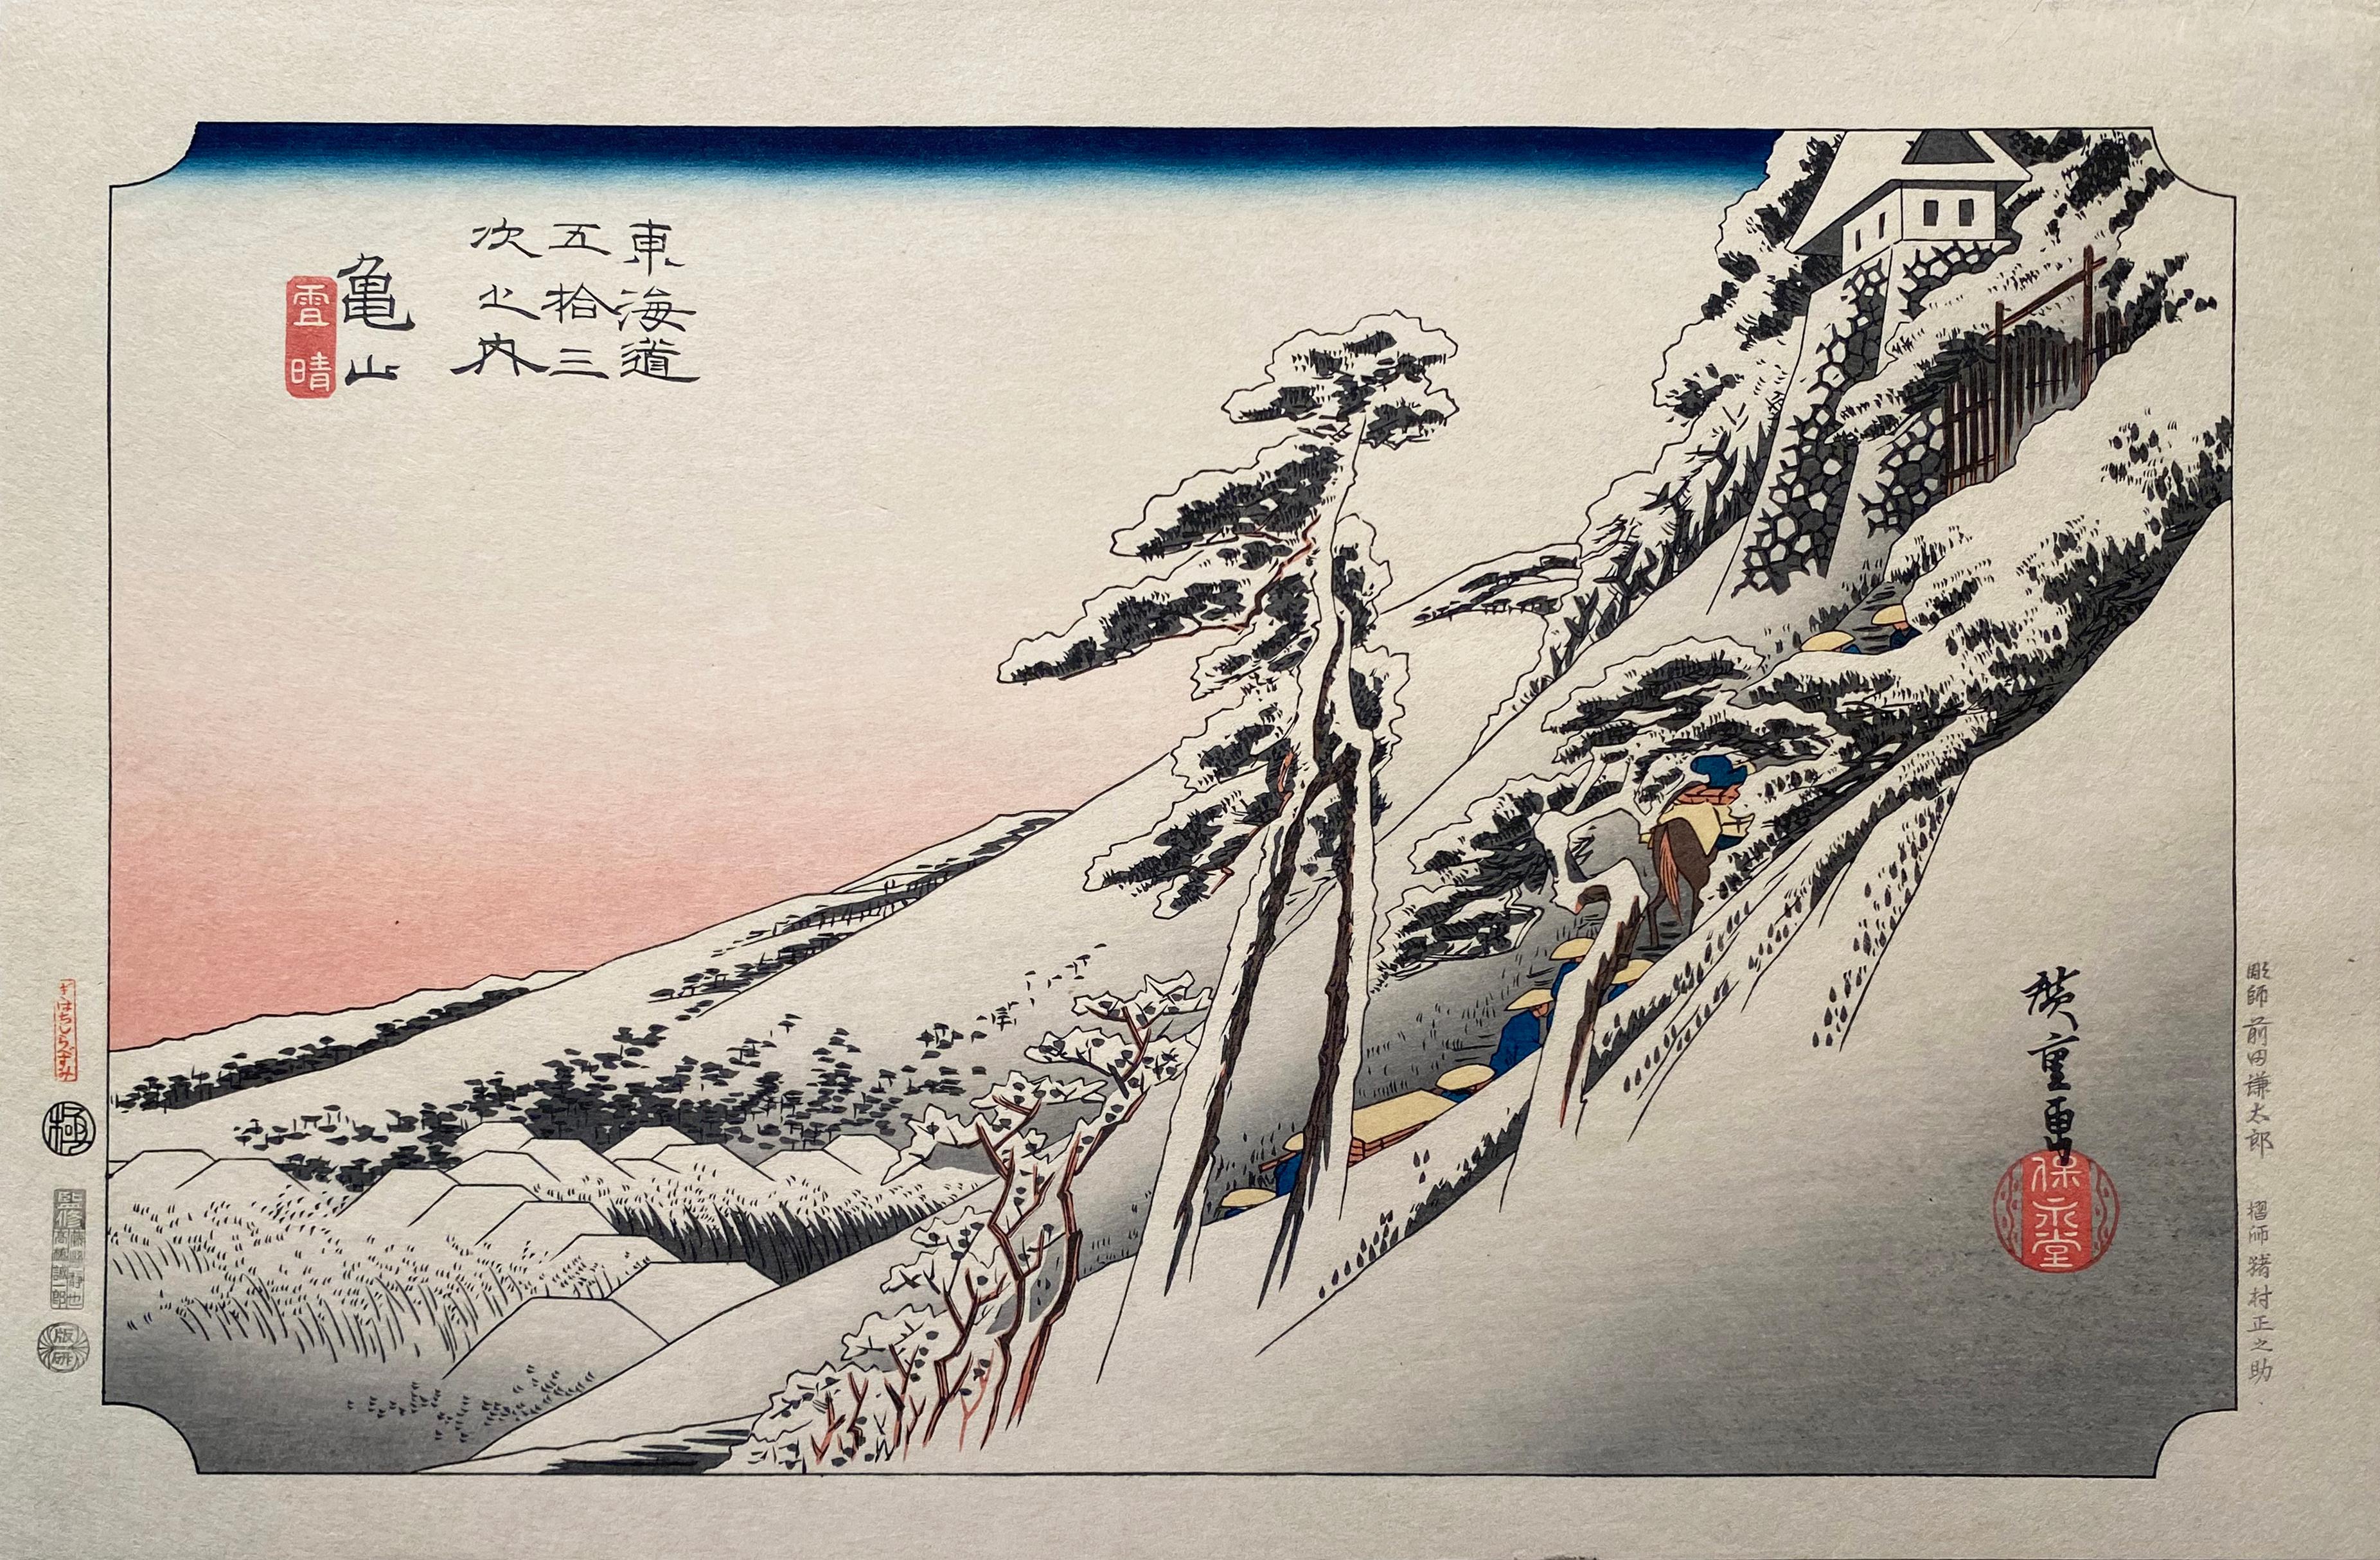 Utagawa Hiroshige (Ando Hiroshige) Landscape Print - 'View of Kameyama', After Utagawa Hiroshige 歌川廣重, Ukiyo-e Woodblock, Tokaido